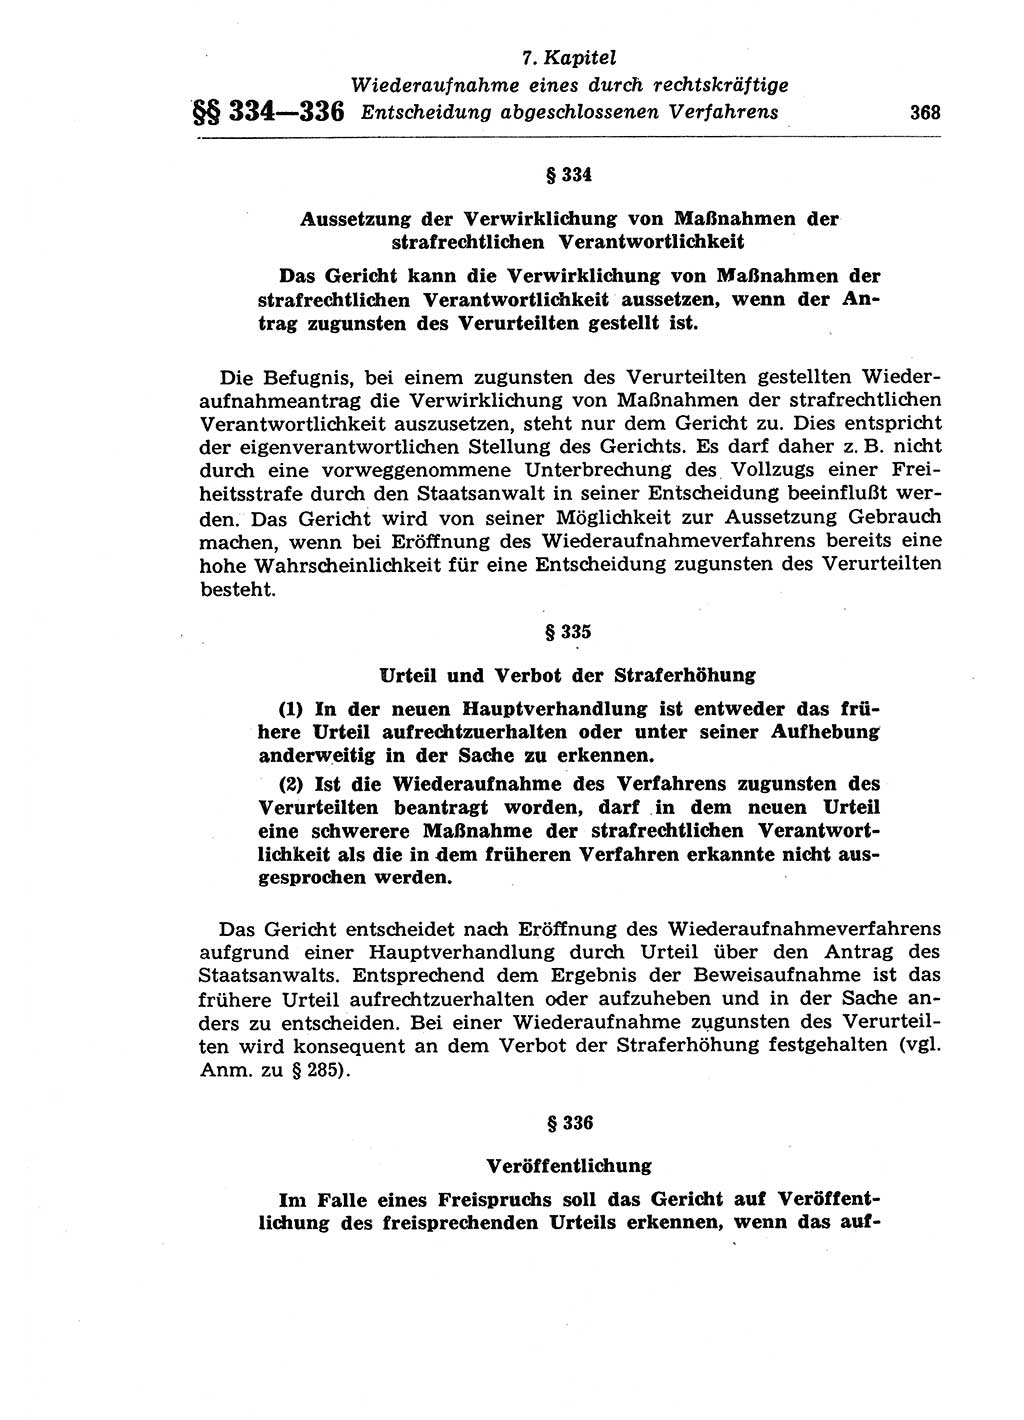 Strafprozeßrecht der DDR (Deutsche Demokratische Republik), Lehrkommentar zur Strafprozeßordnung (StPO) 1968, Seite 368 (Strafprozeßr. DDR Lehrkomm. StPO 19688, S. 368)